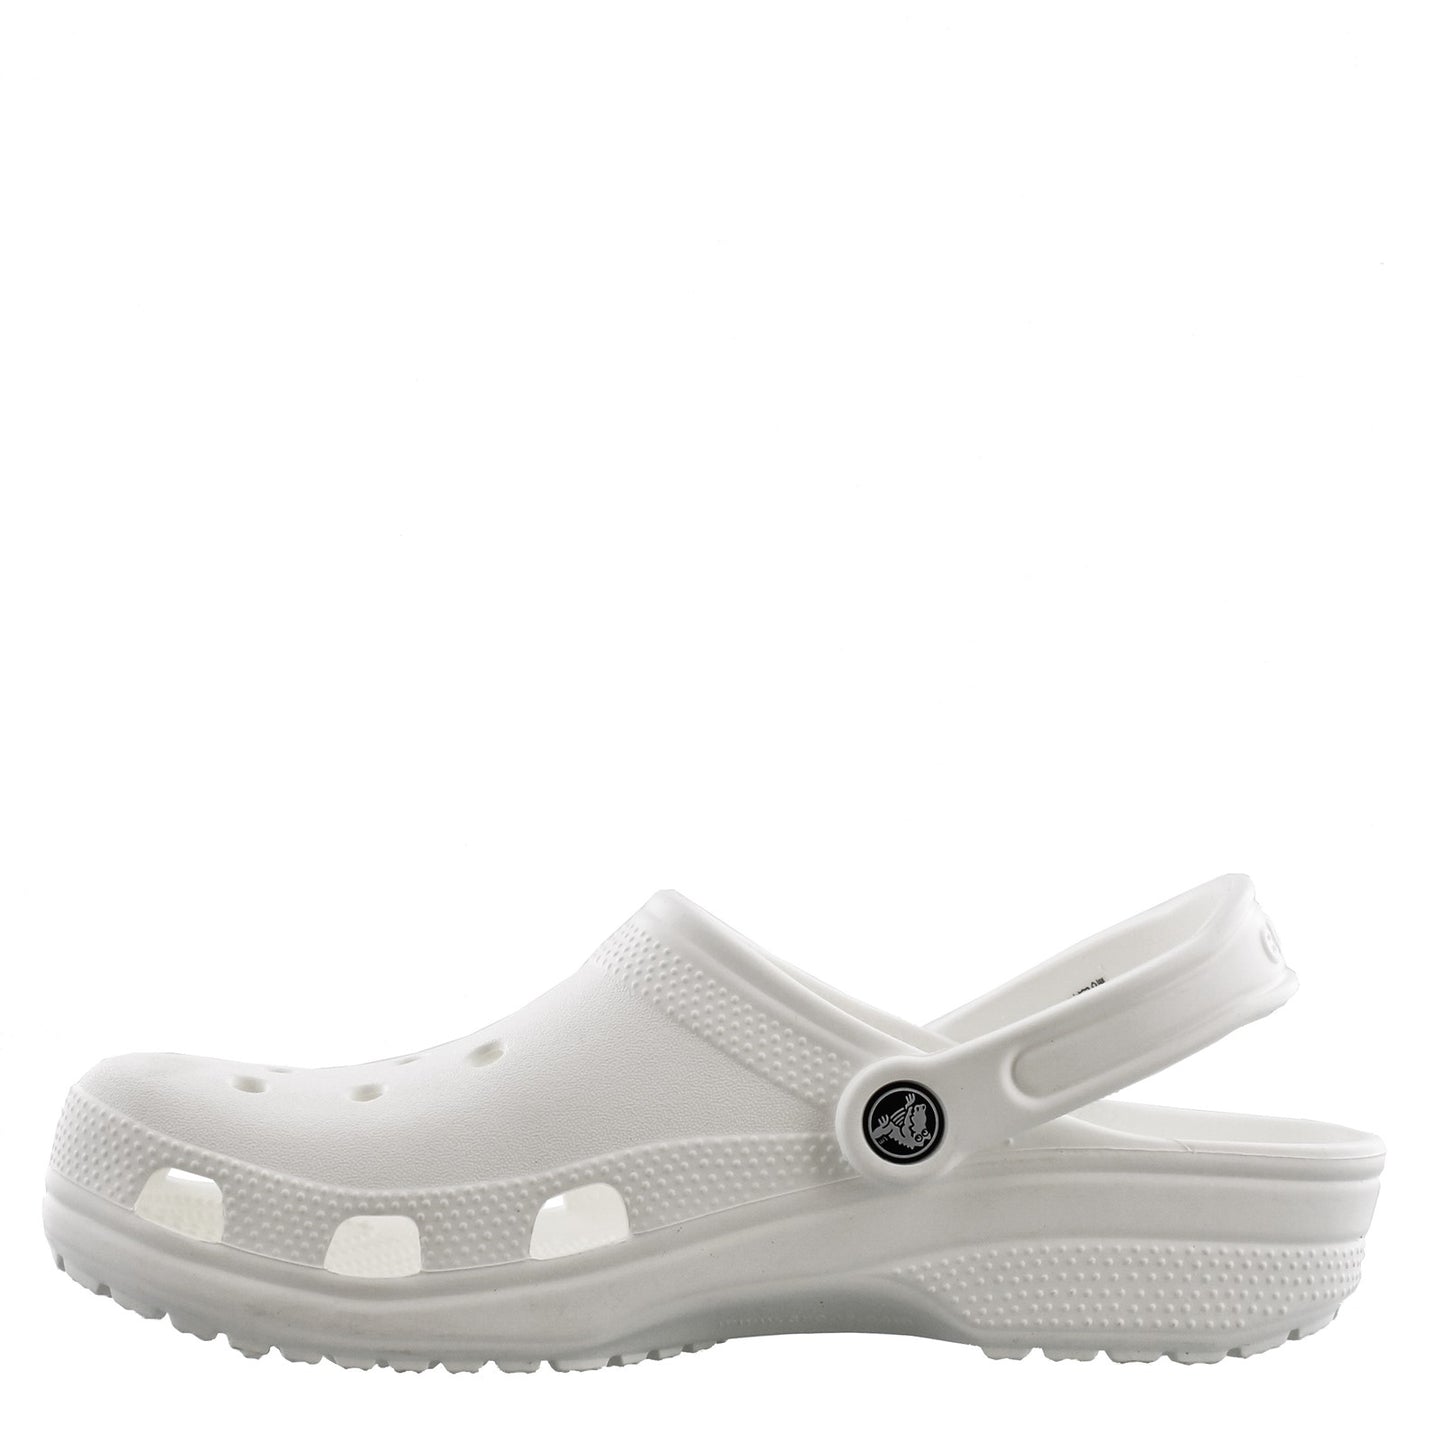 Peltz Shoes  Unisex Crocs Classic Clog White 10001-100